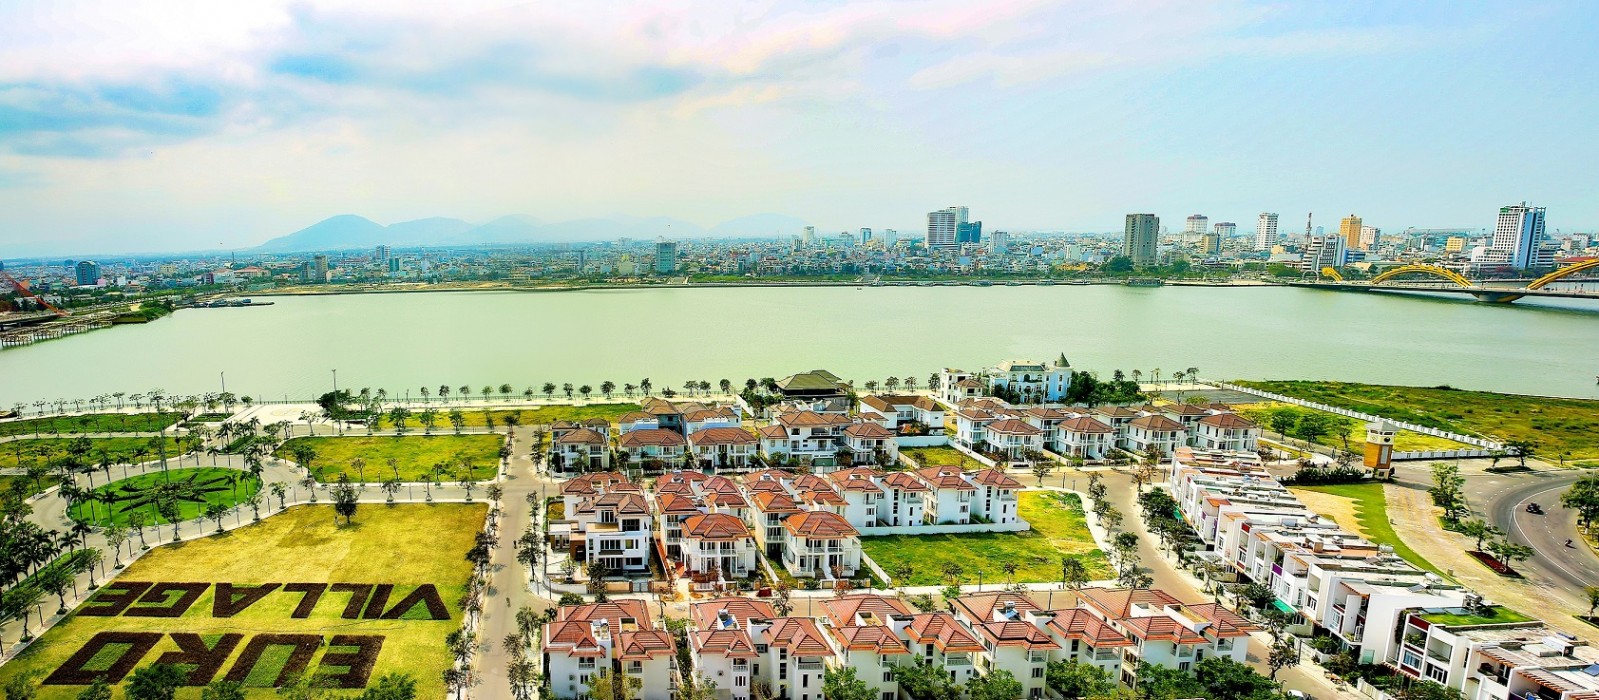 Tọa lạc ở vị trí đắt giá nhất hiện nay của Đà Nẵng, Euro Village đối diện khu trung tâm hành chính và tài chính Đà Nẵng, gần cầu Rồng và cầu Trần Thị Lý, kề sông Hàn, cách bãi biển Mỹ Khê chỉ 500 m. Euro Village thuộc khu vực được ưu tiên phát triển hạ tầng của thành phố.